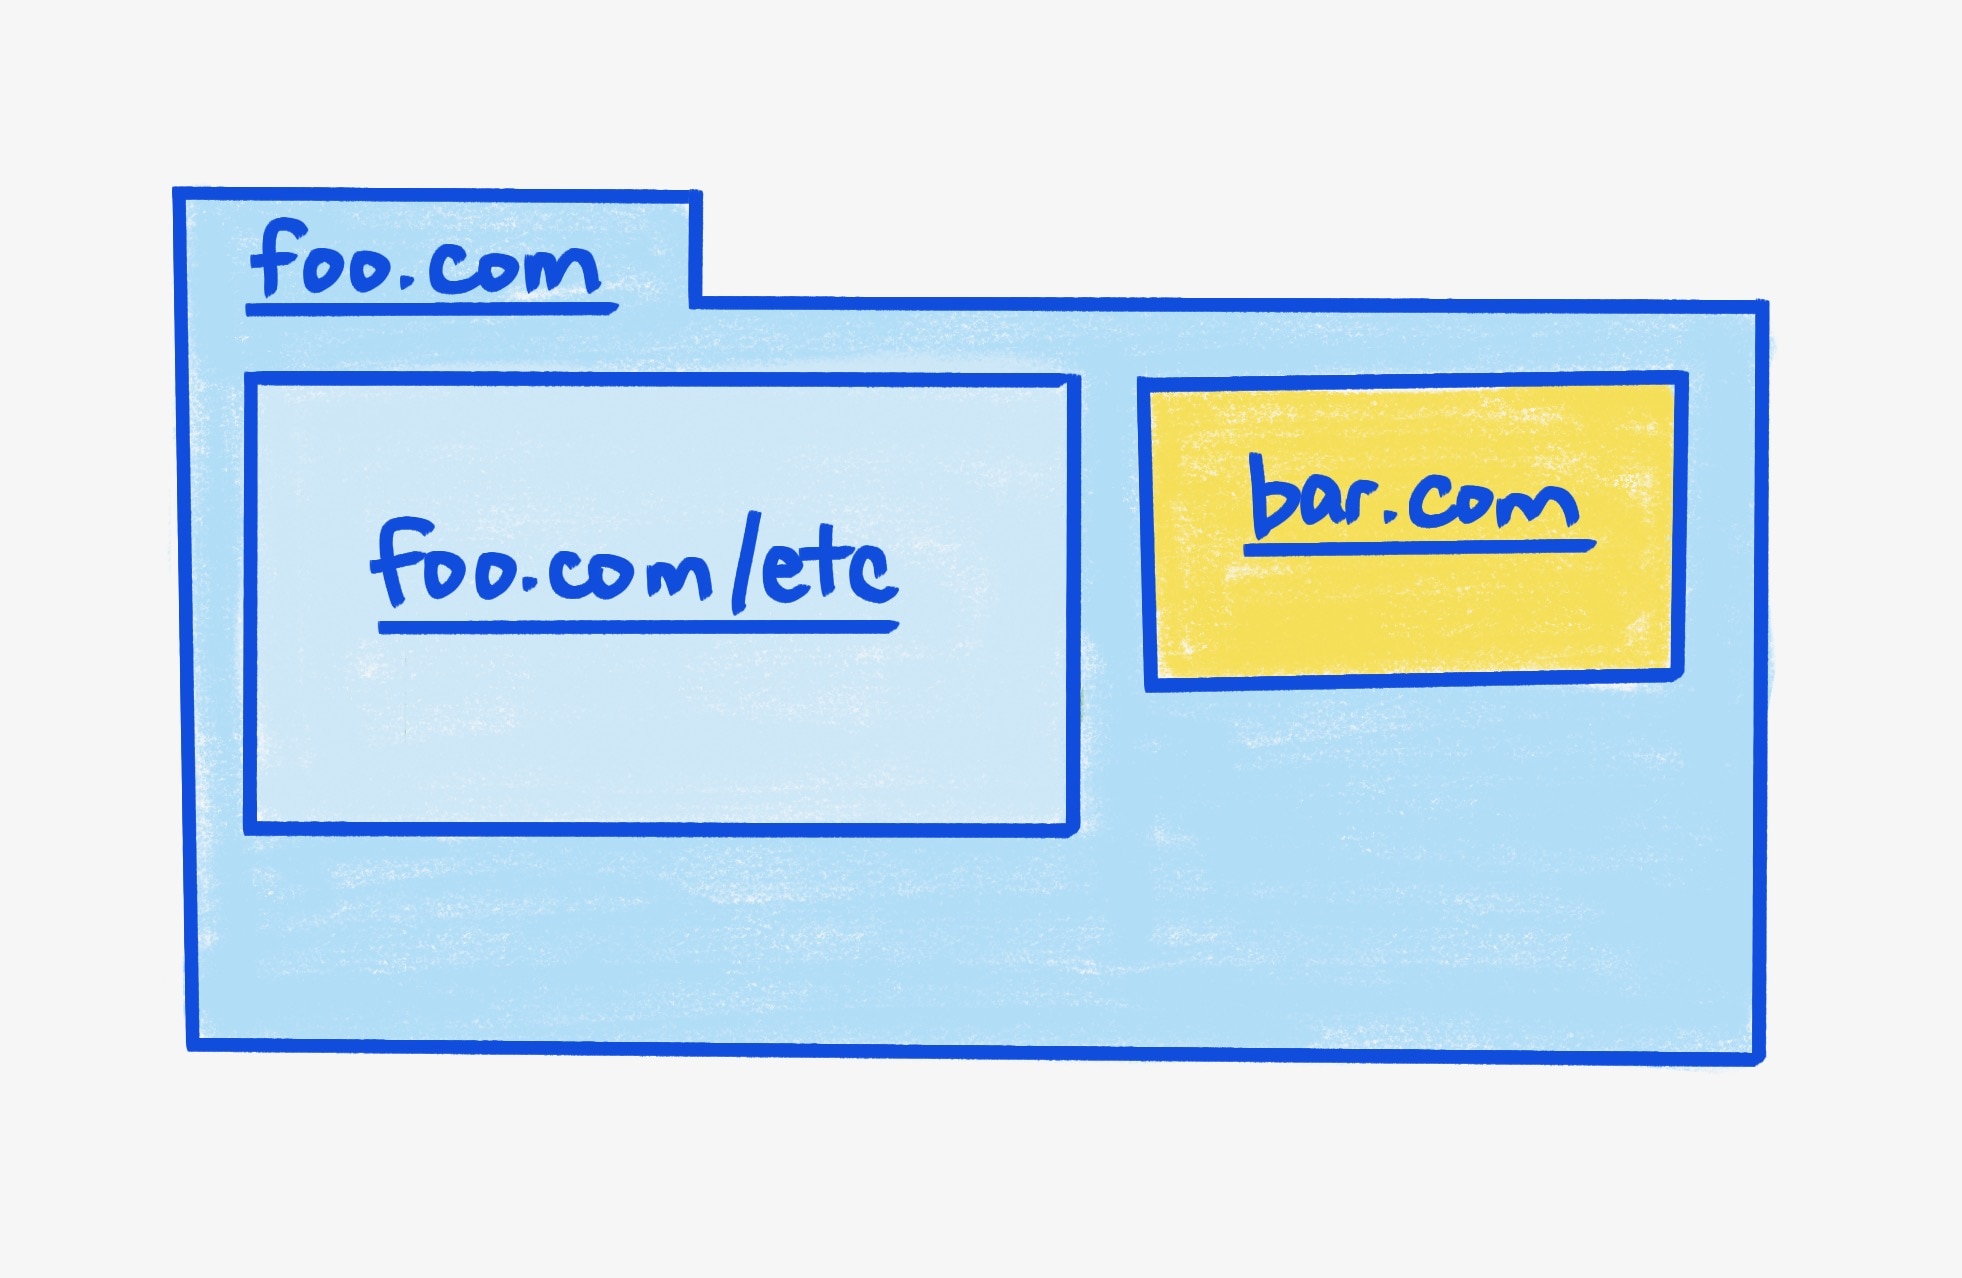 父框架 foo.com，包含两个 iframe。